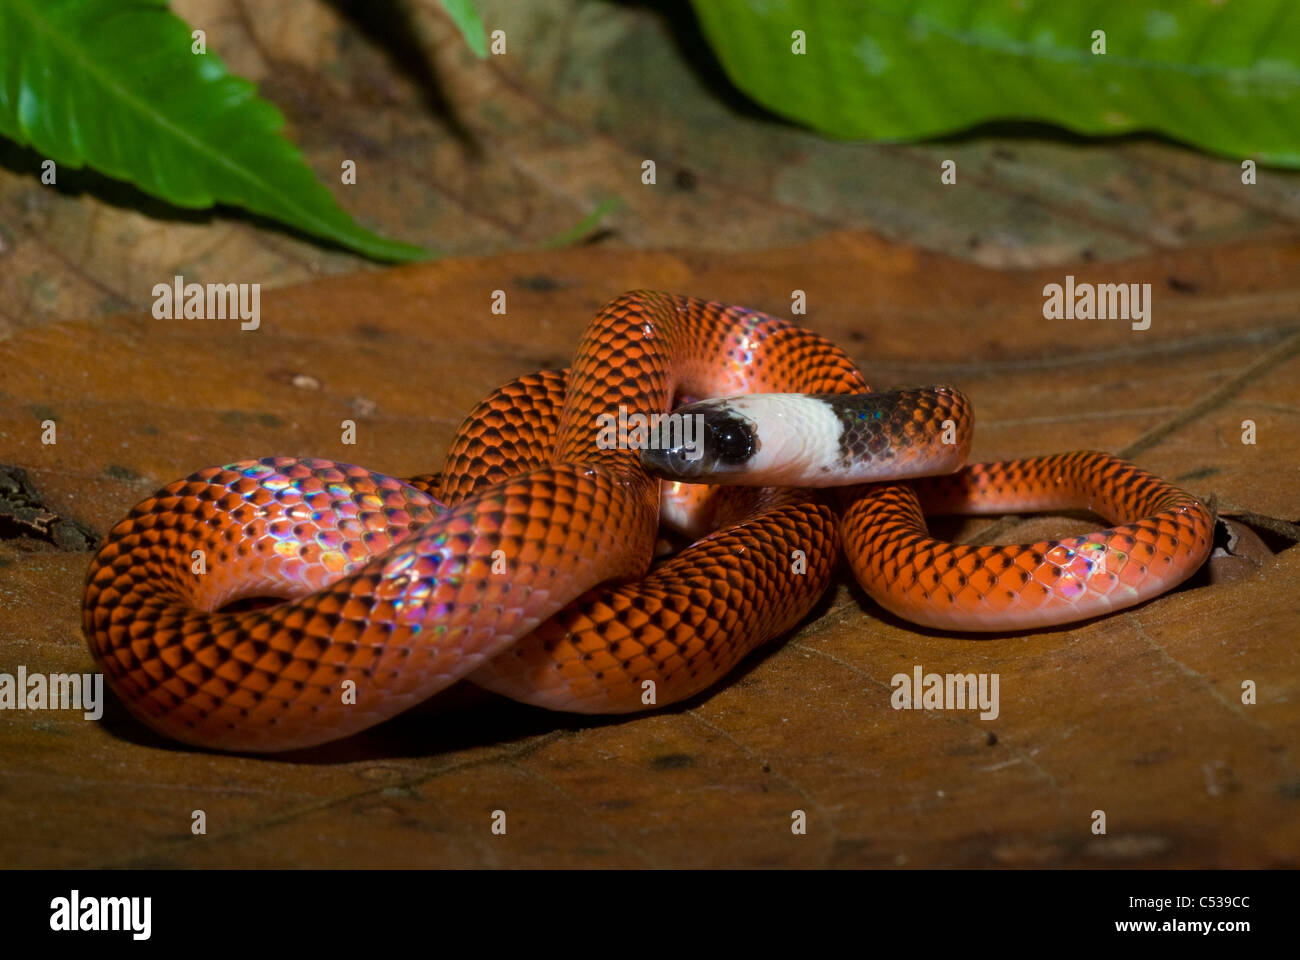 Nero-collare (aka Amazon mangiatore di uova; Drepanoides anomalus) snake in Amazzonia peruviana foresta pluviale Foto Stock